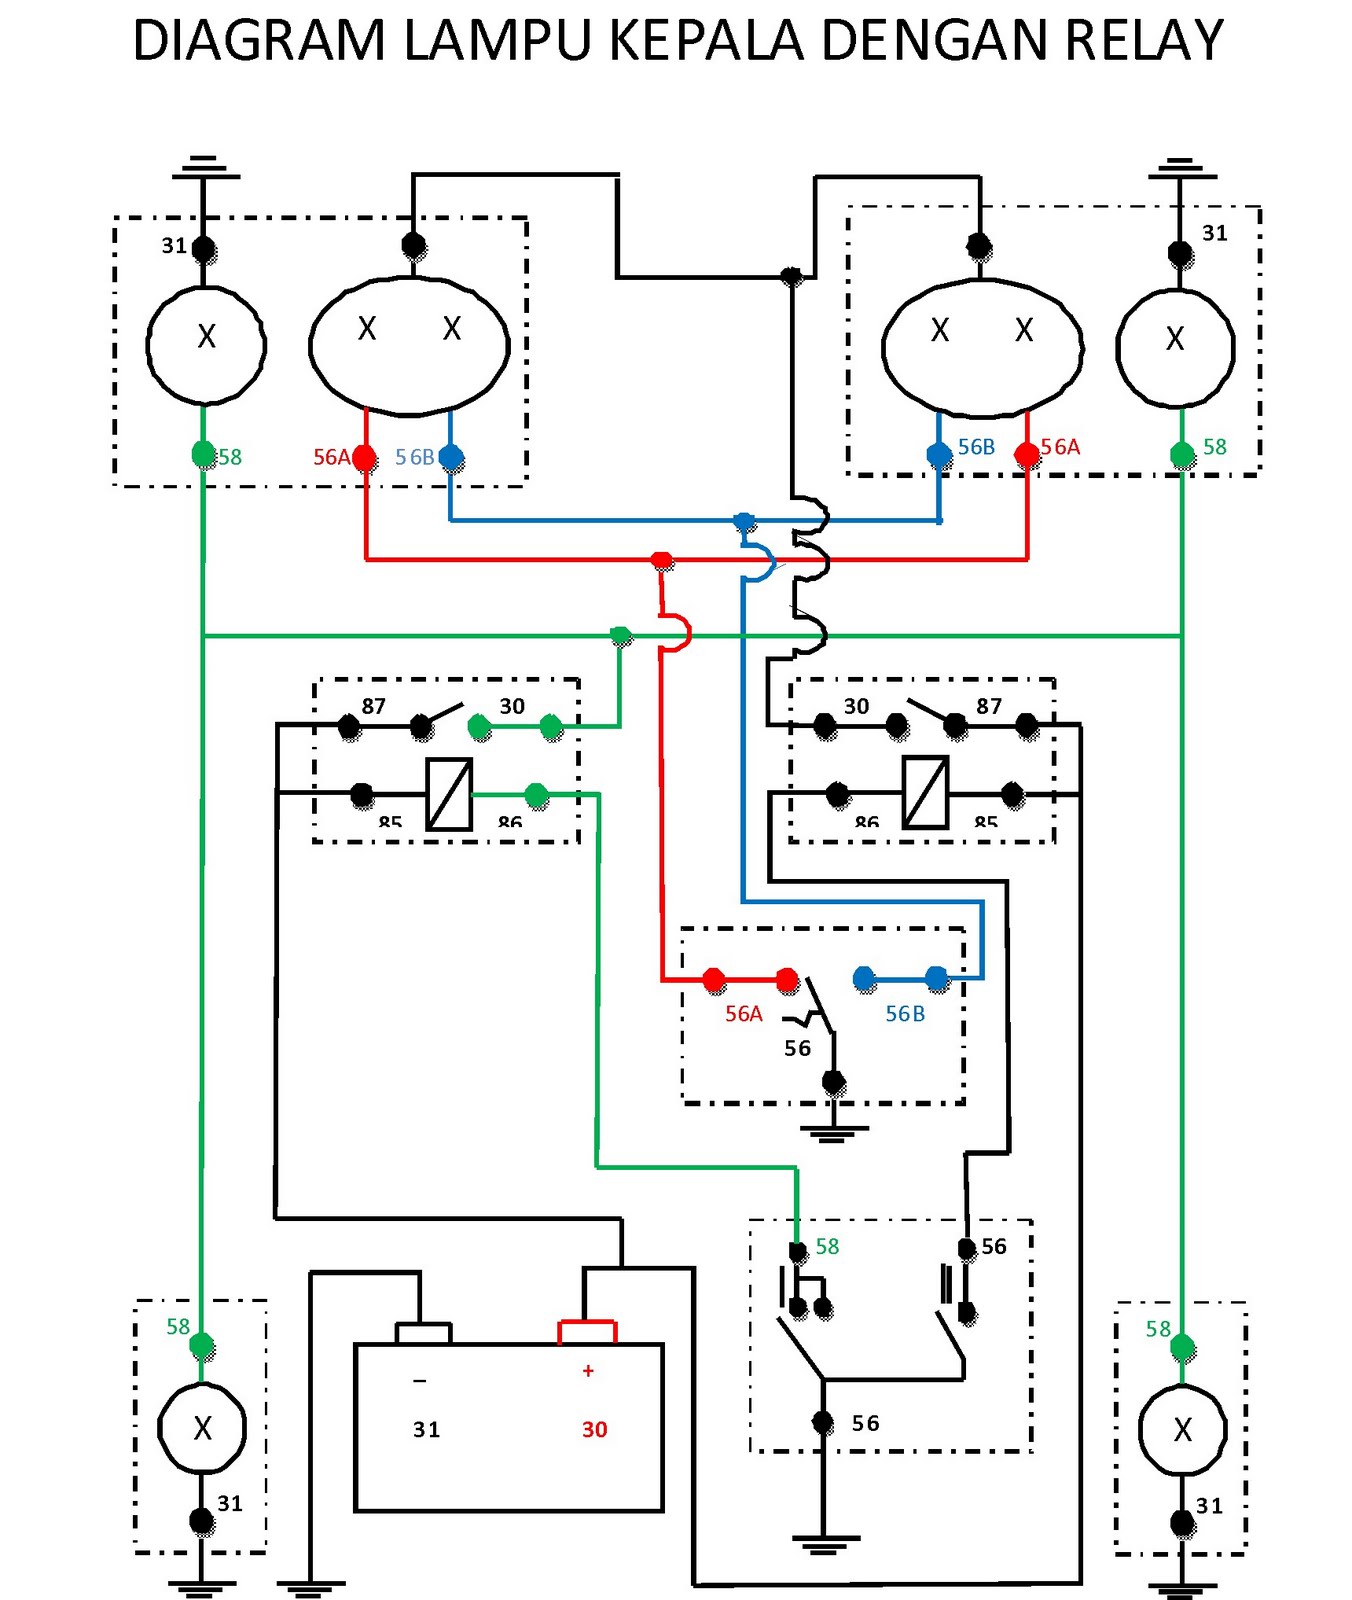 Wiring Diagram Lampu Kepala Motor - Wiring Diagram